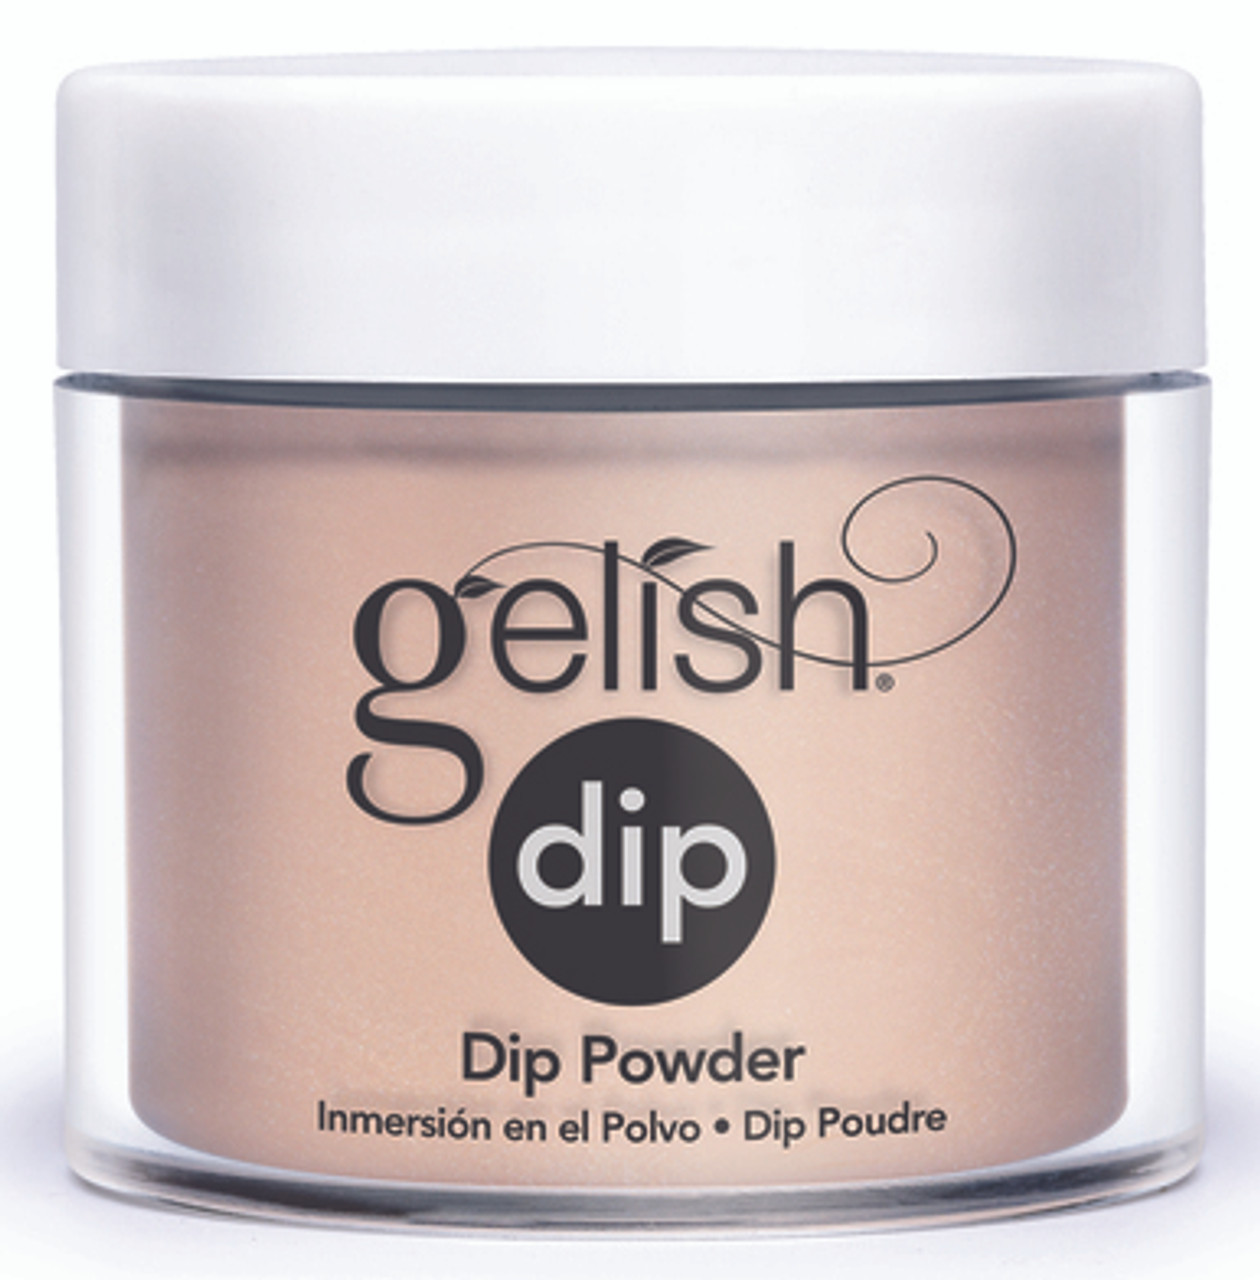 Gelish Dip Powder Taupe Model - 0.8 oz / 23 g